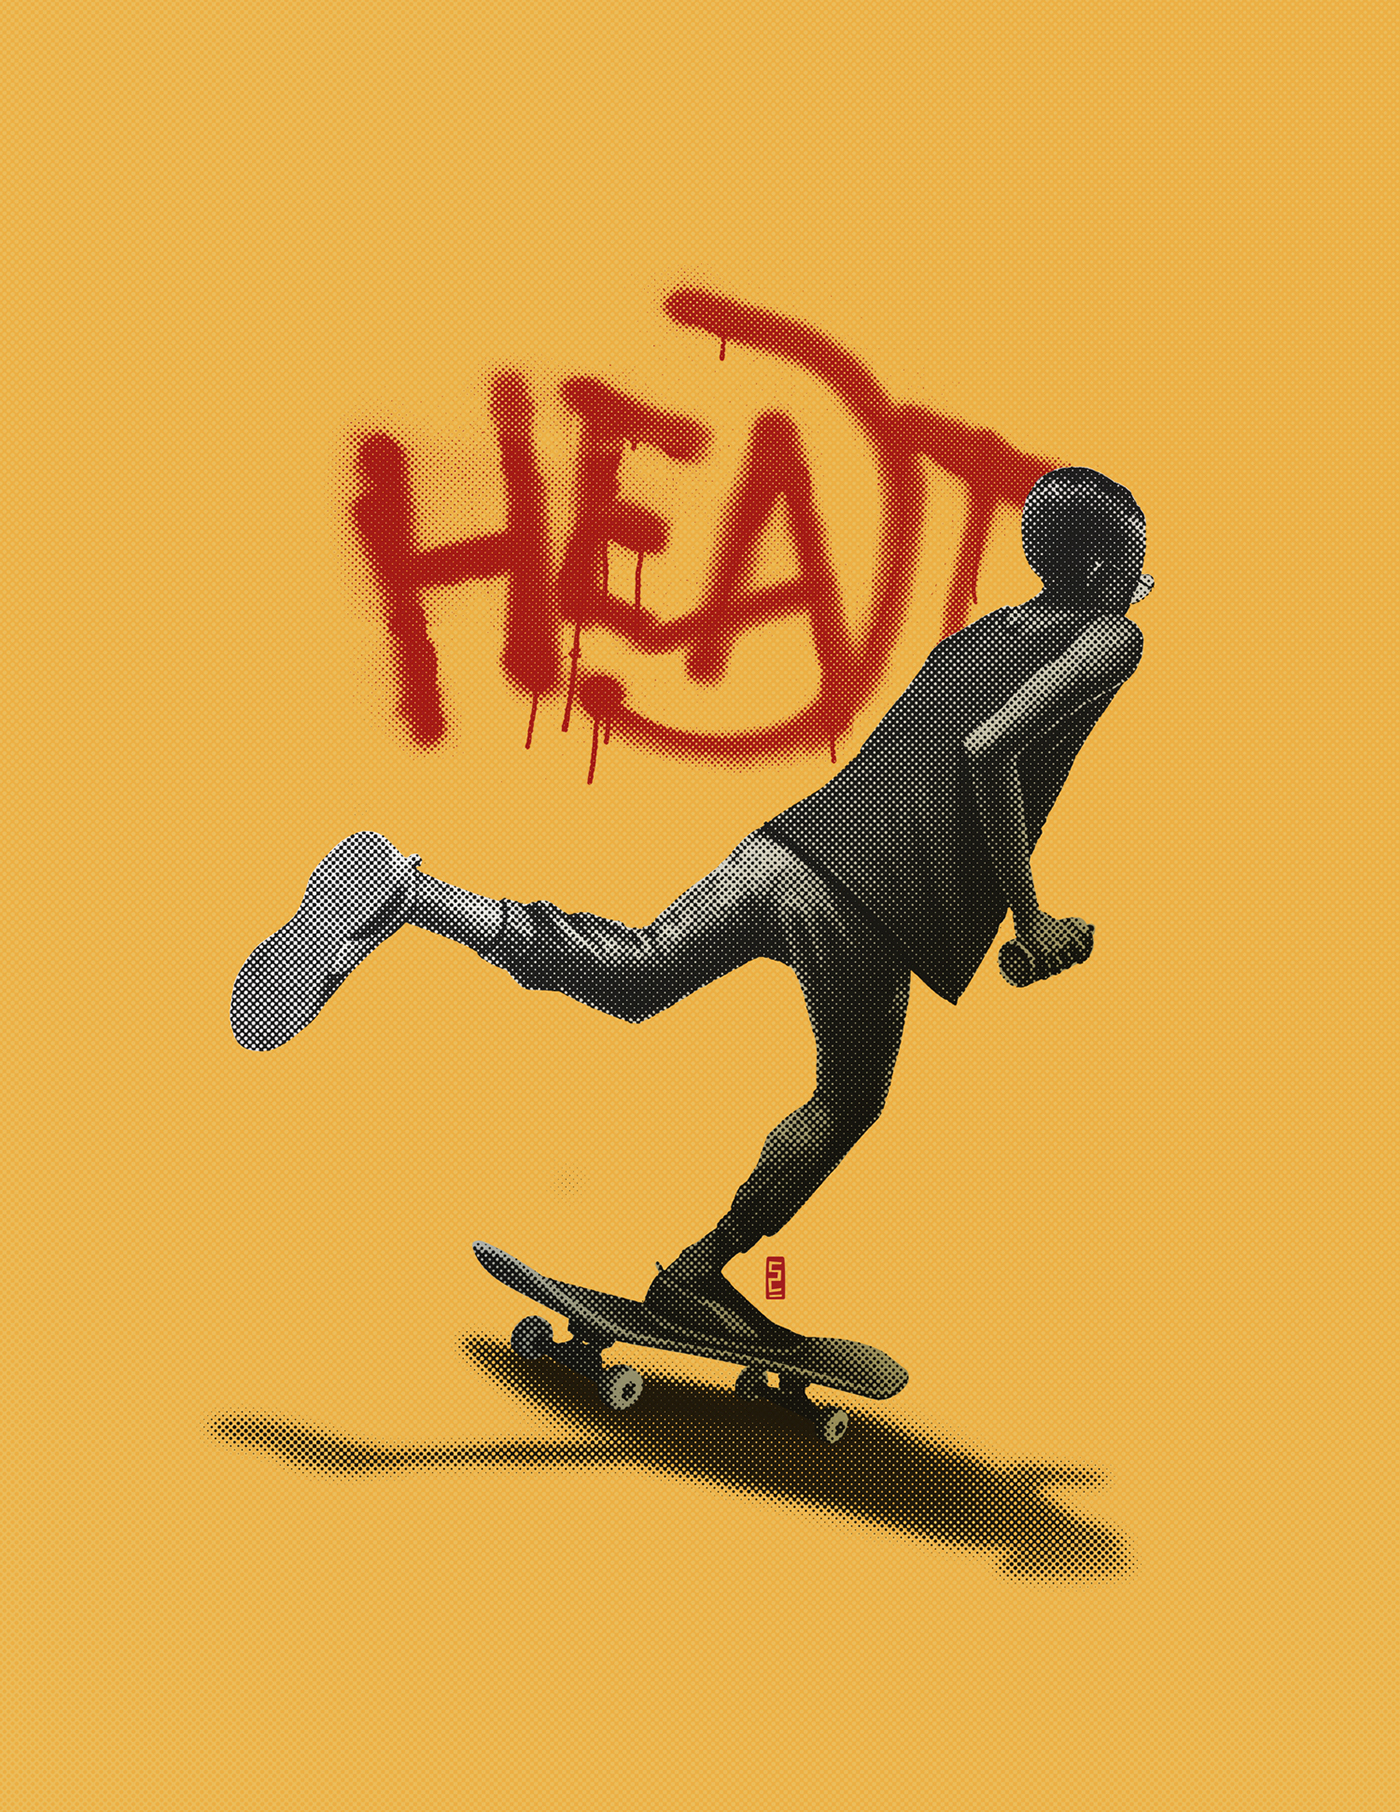 #halftone #screenprint #artprint #heat #run #skateboard #graffiti